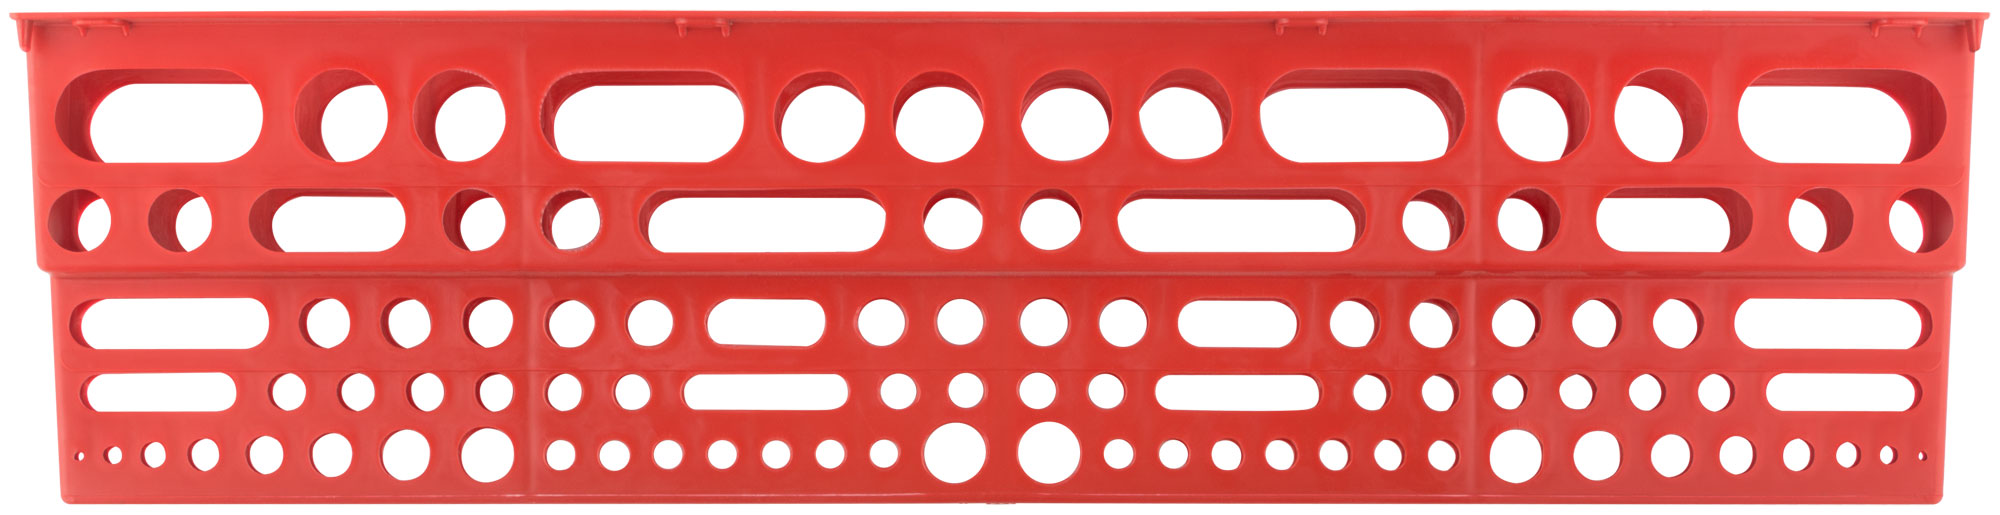 Полка для инструмента пластиковая красная, 96 отверстий, 610х150 мм